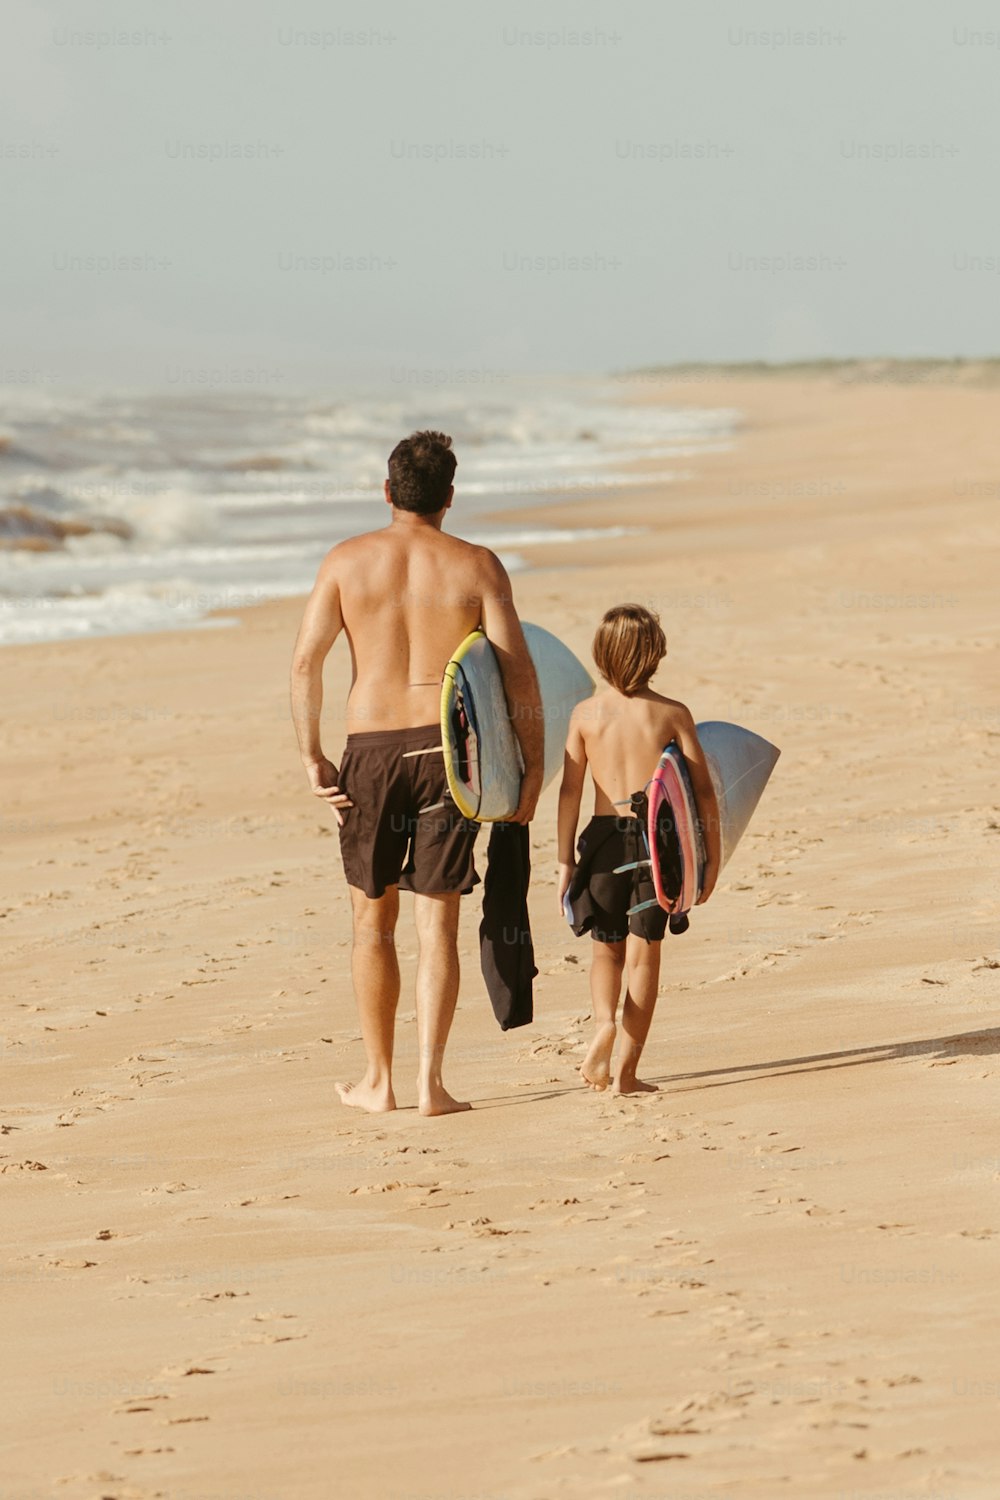 서핑보드를 들고 해변을 걷고 있는 남자와 소년